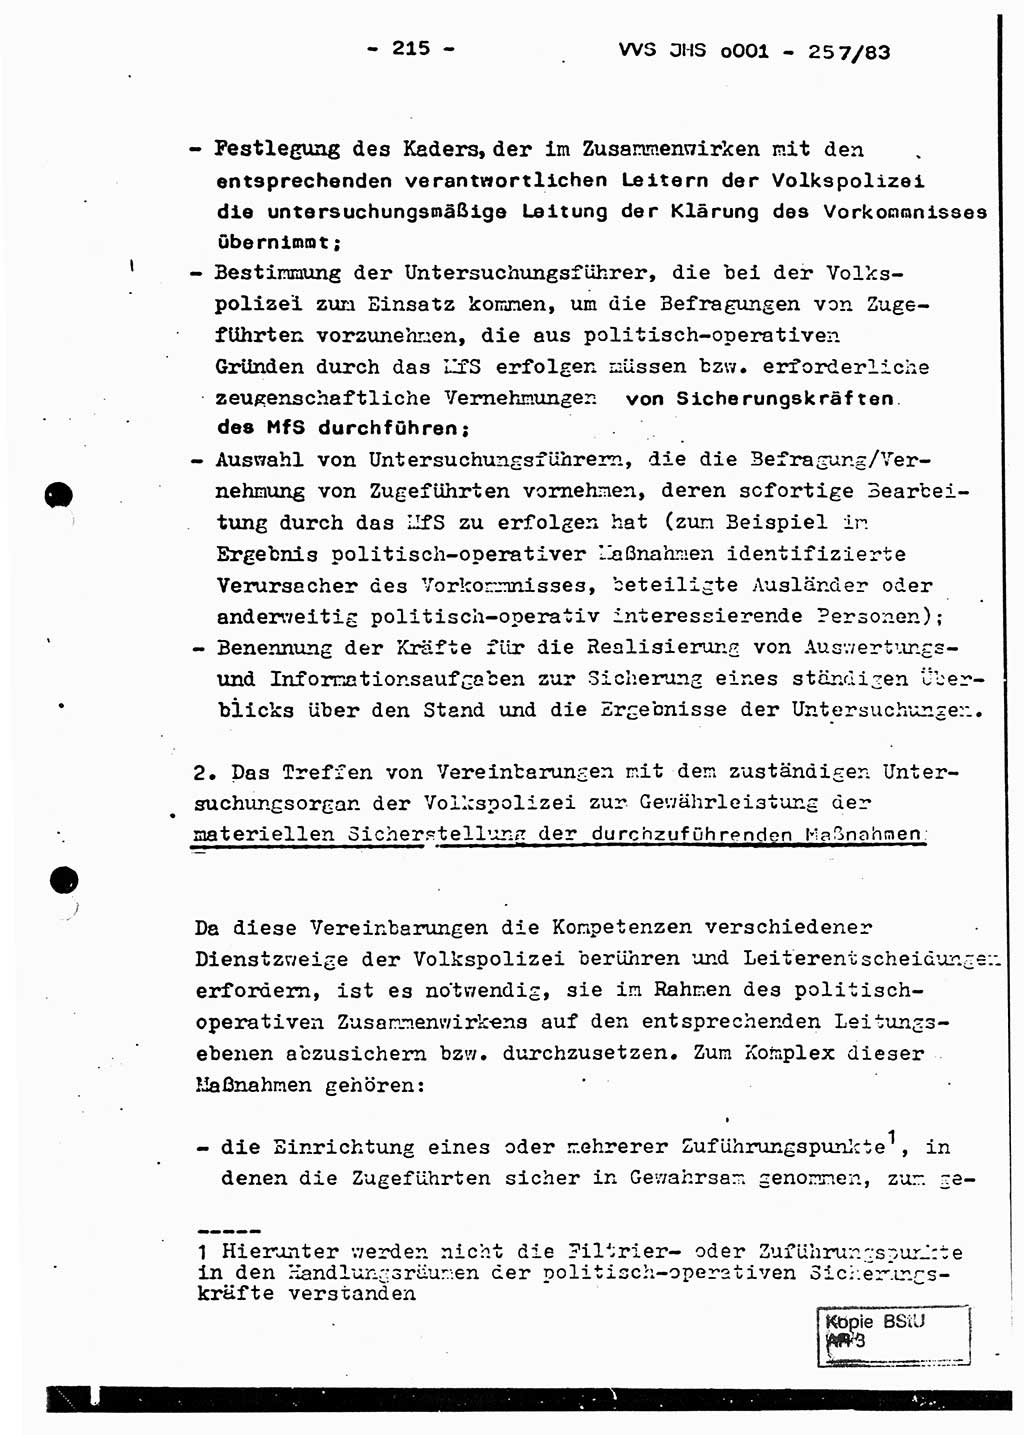 Dissertation, Oberst Helmut Lubas (BV Mdg.), Oberstleutnant Manfred Eschberger (HA IX), Oberleutnant Hans-Jürgen Ludwig (JHS), Ministerium für Staatssicherheit (MfS) [Deutsche Demokratische Republik (DDR)], Juristische Hochschule (JHS), Vertrauliche Verschlußsache (VVS) o001-257/83, Potsdam 1983, Seite 215 (Diss. MfS DDR JHS VVS o001-257/83 1983, S. 215)